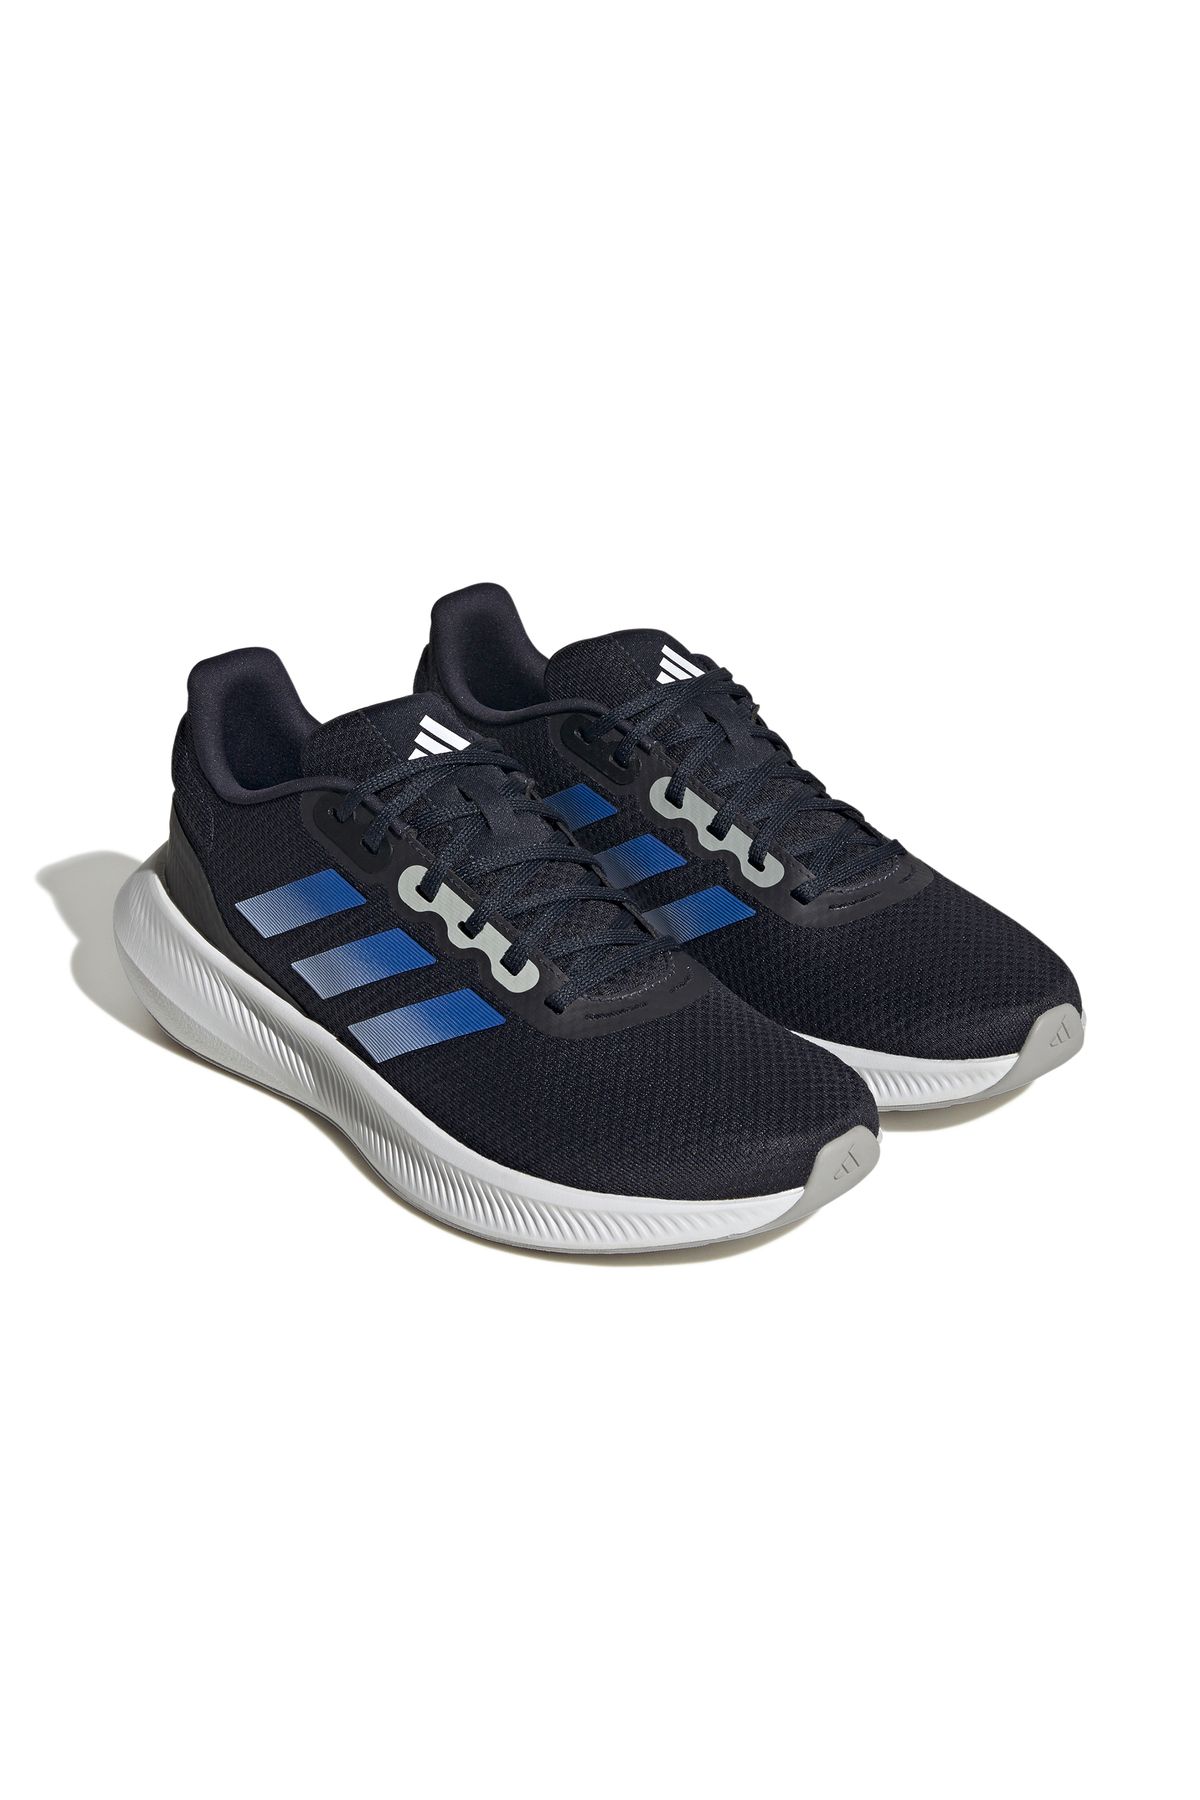 adidas Runfalcon 3.0 Günlük Kullanıma ve Spora Uygun Erkek Koşu Yürüyüş Ayakkabısı Sneaker